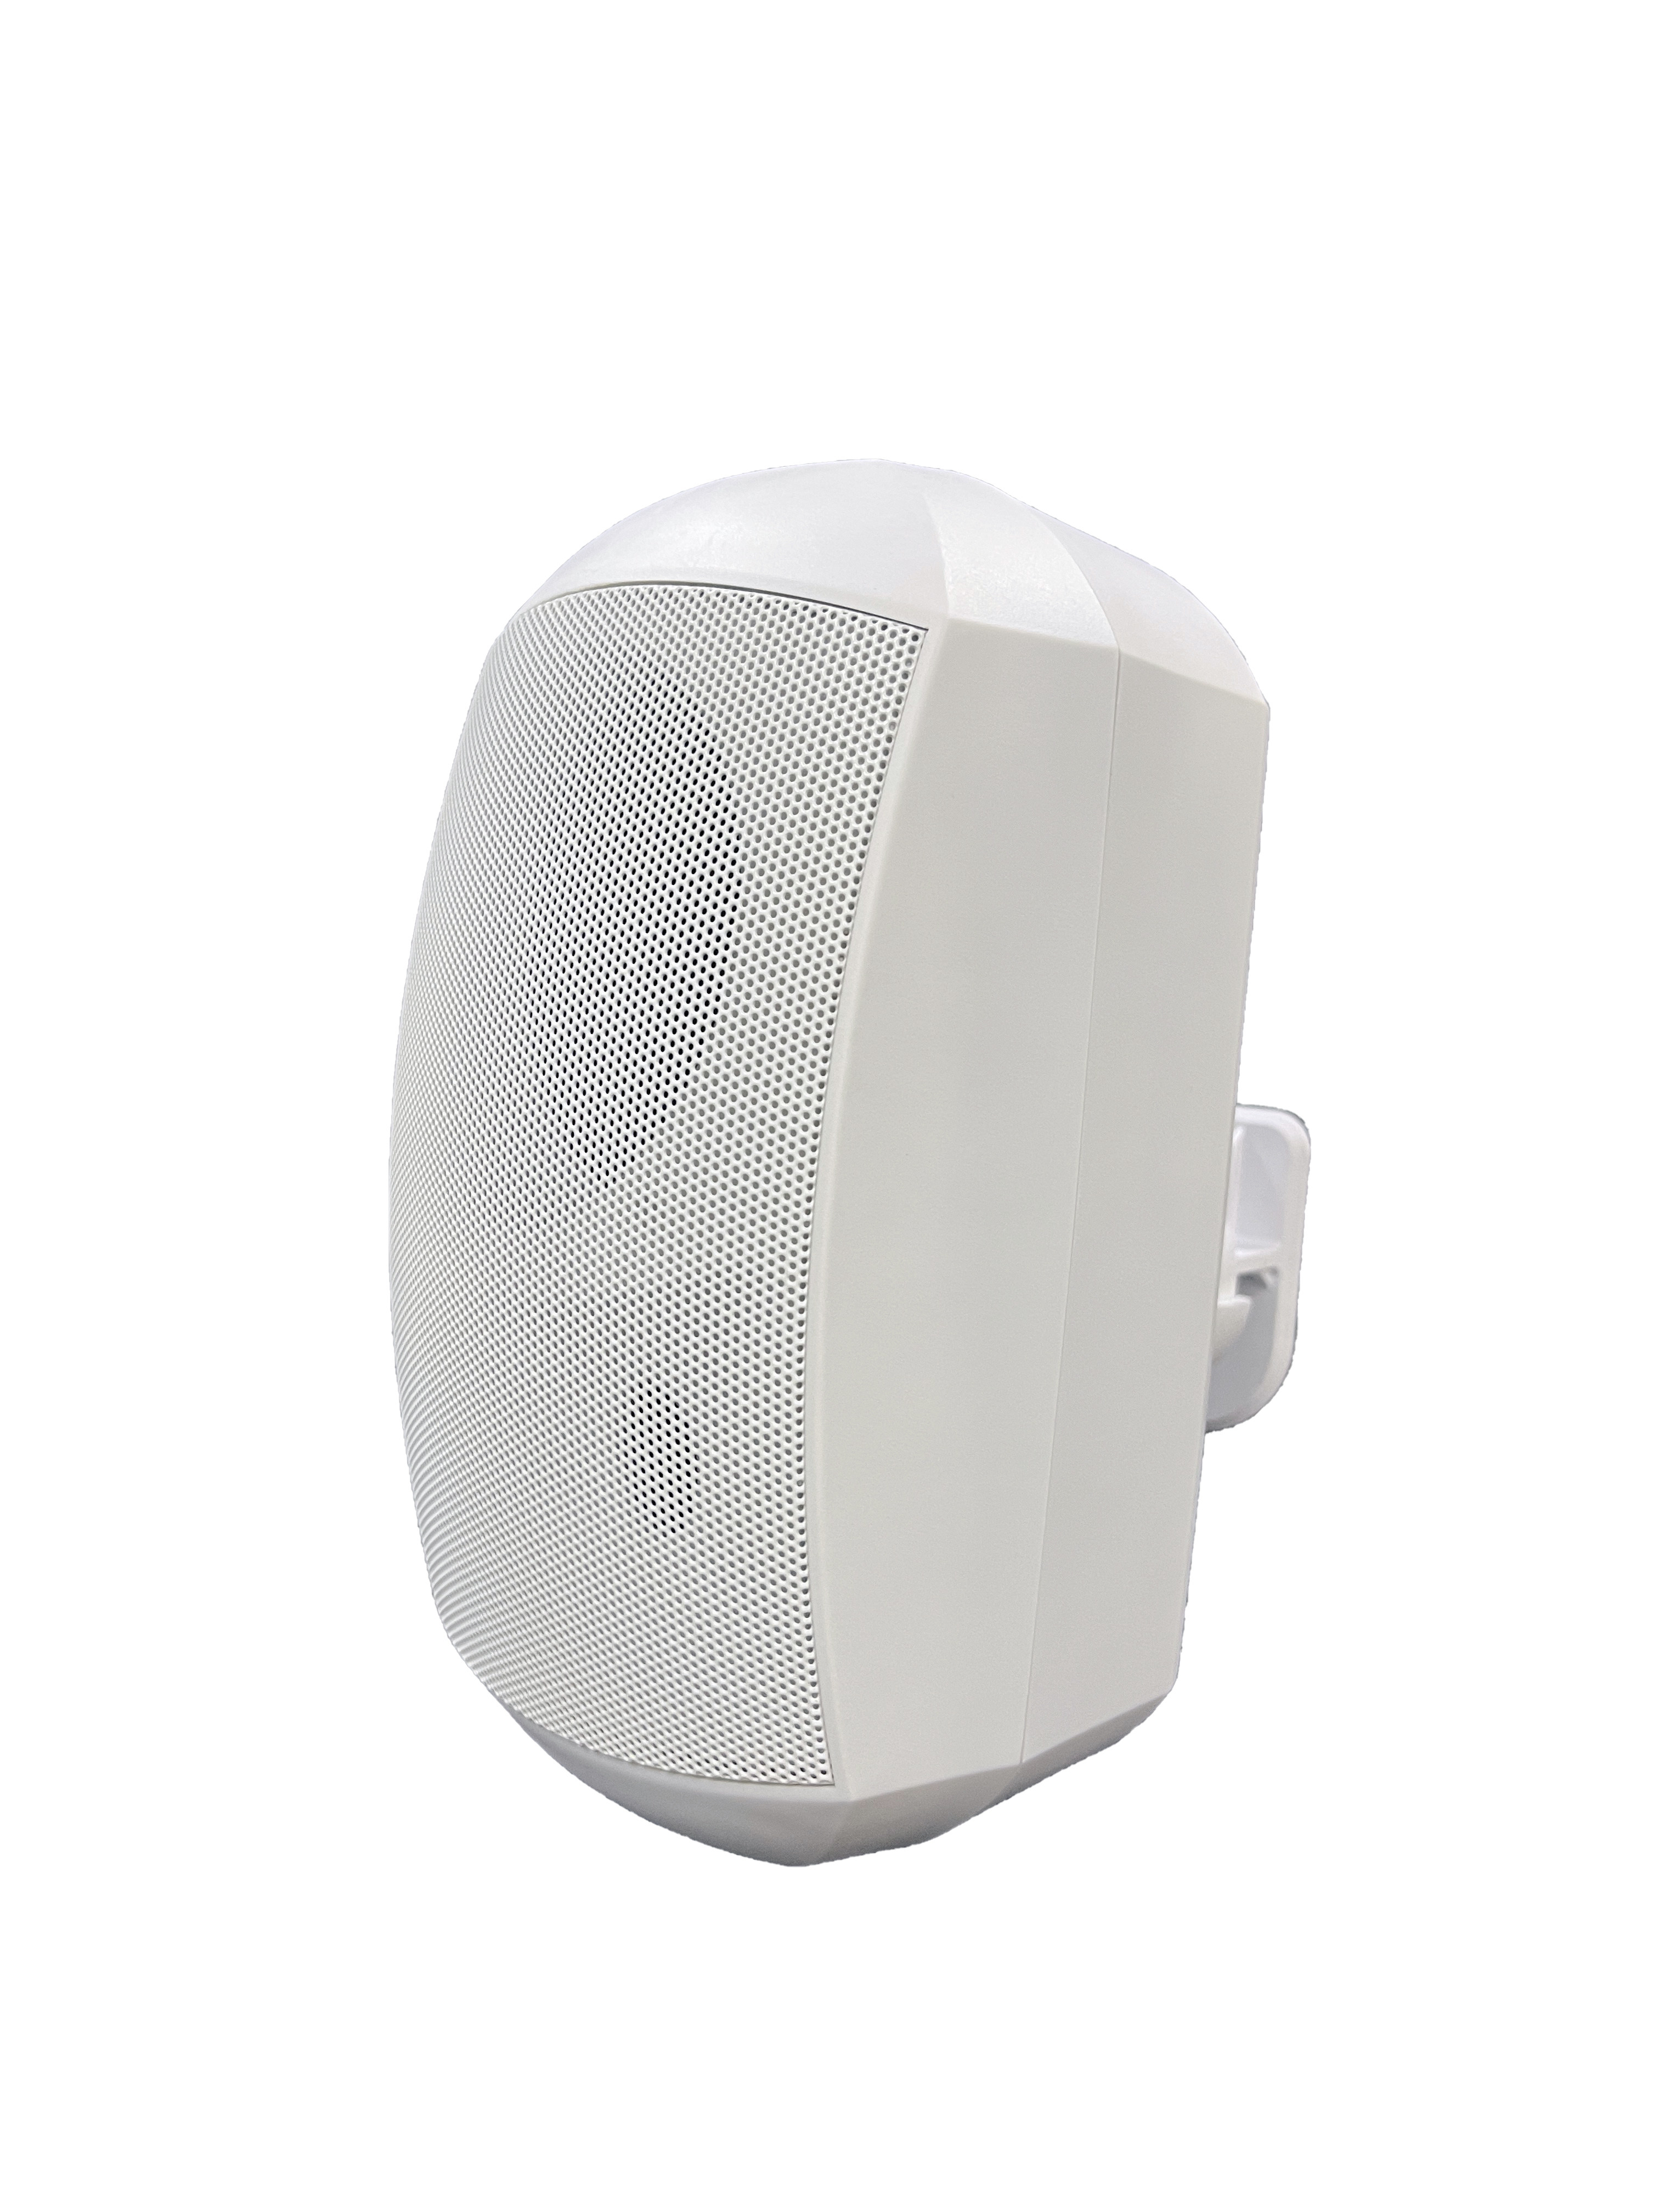 FWS-620W 4.5 inch 20W Outdoor Waterproof Wall Mount Speaker